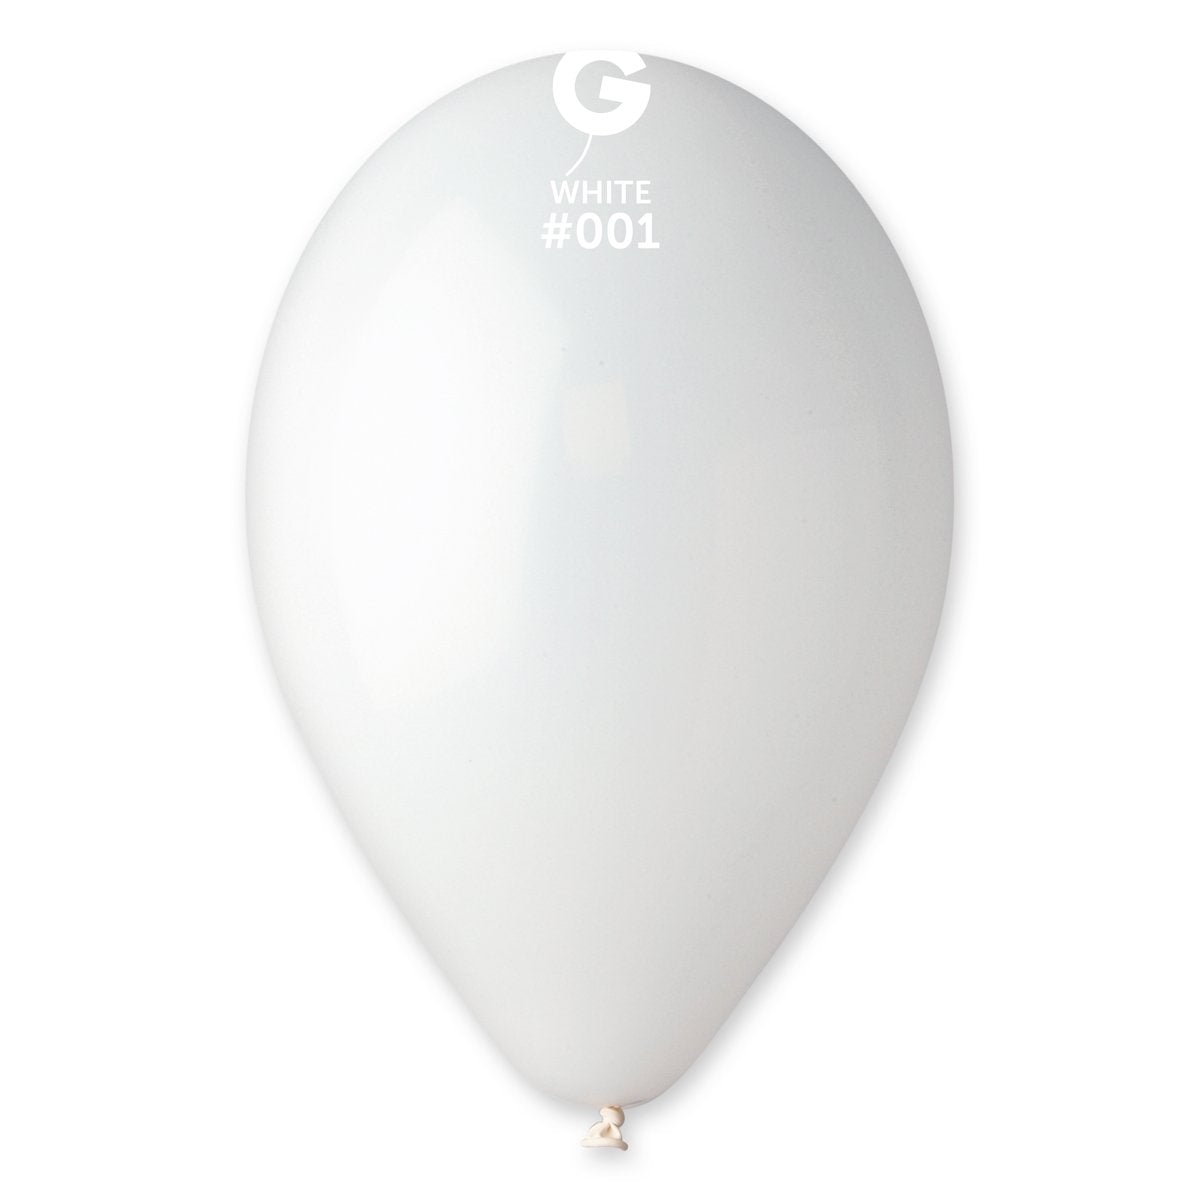 White Latex Balloon #001 - PaperGeenius